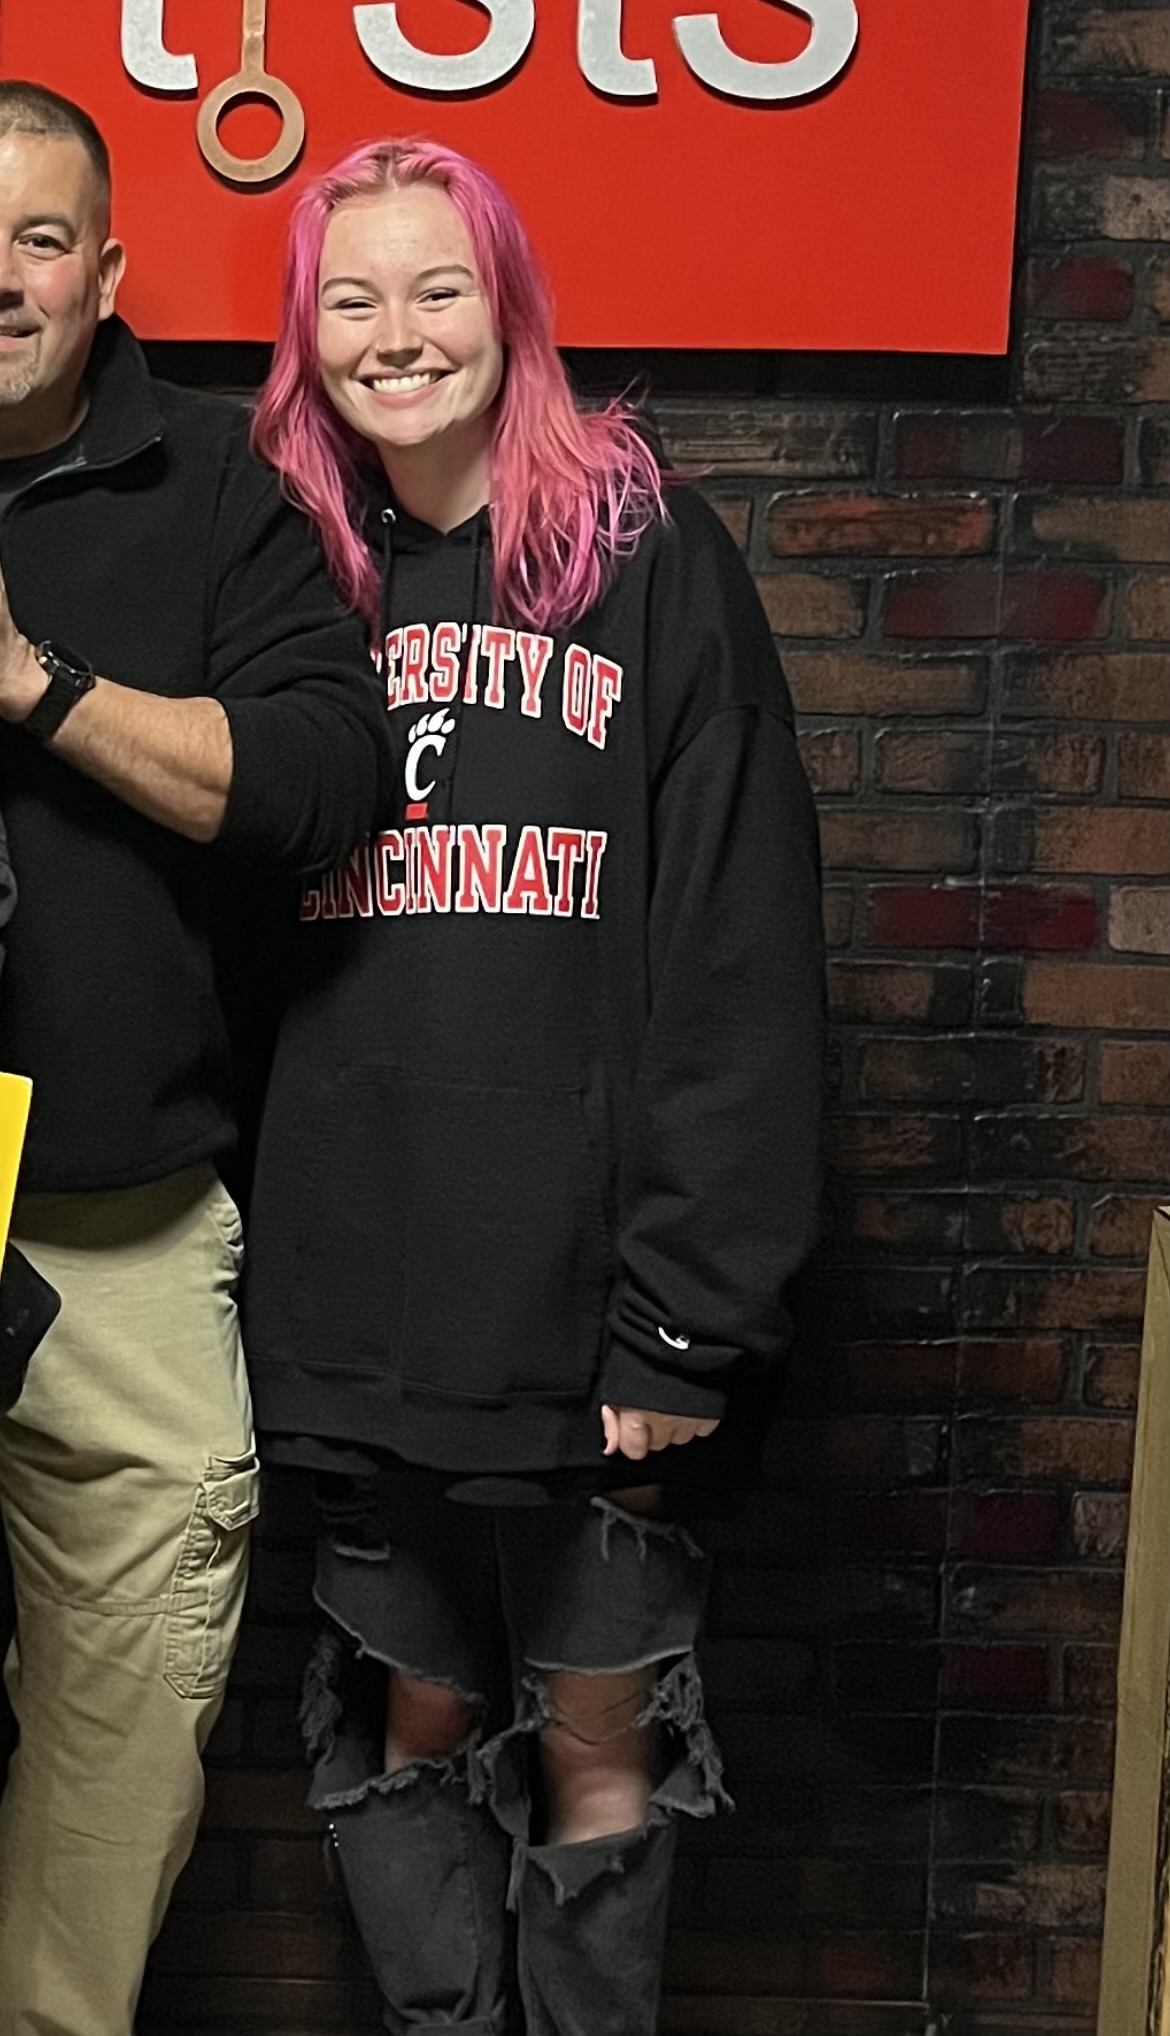 Lauren Massaro wearing a University of Cincinnati sweatshirt